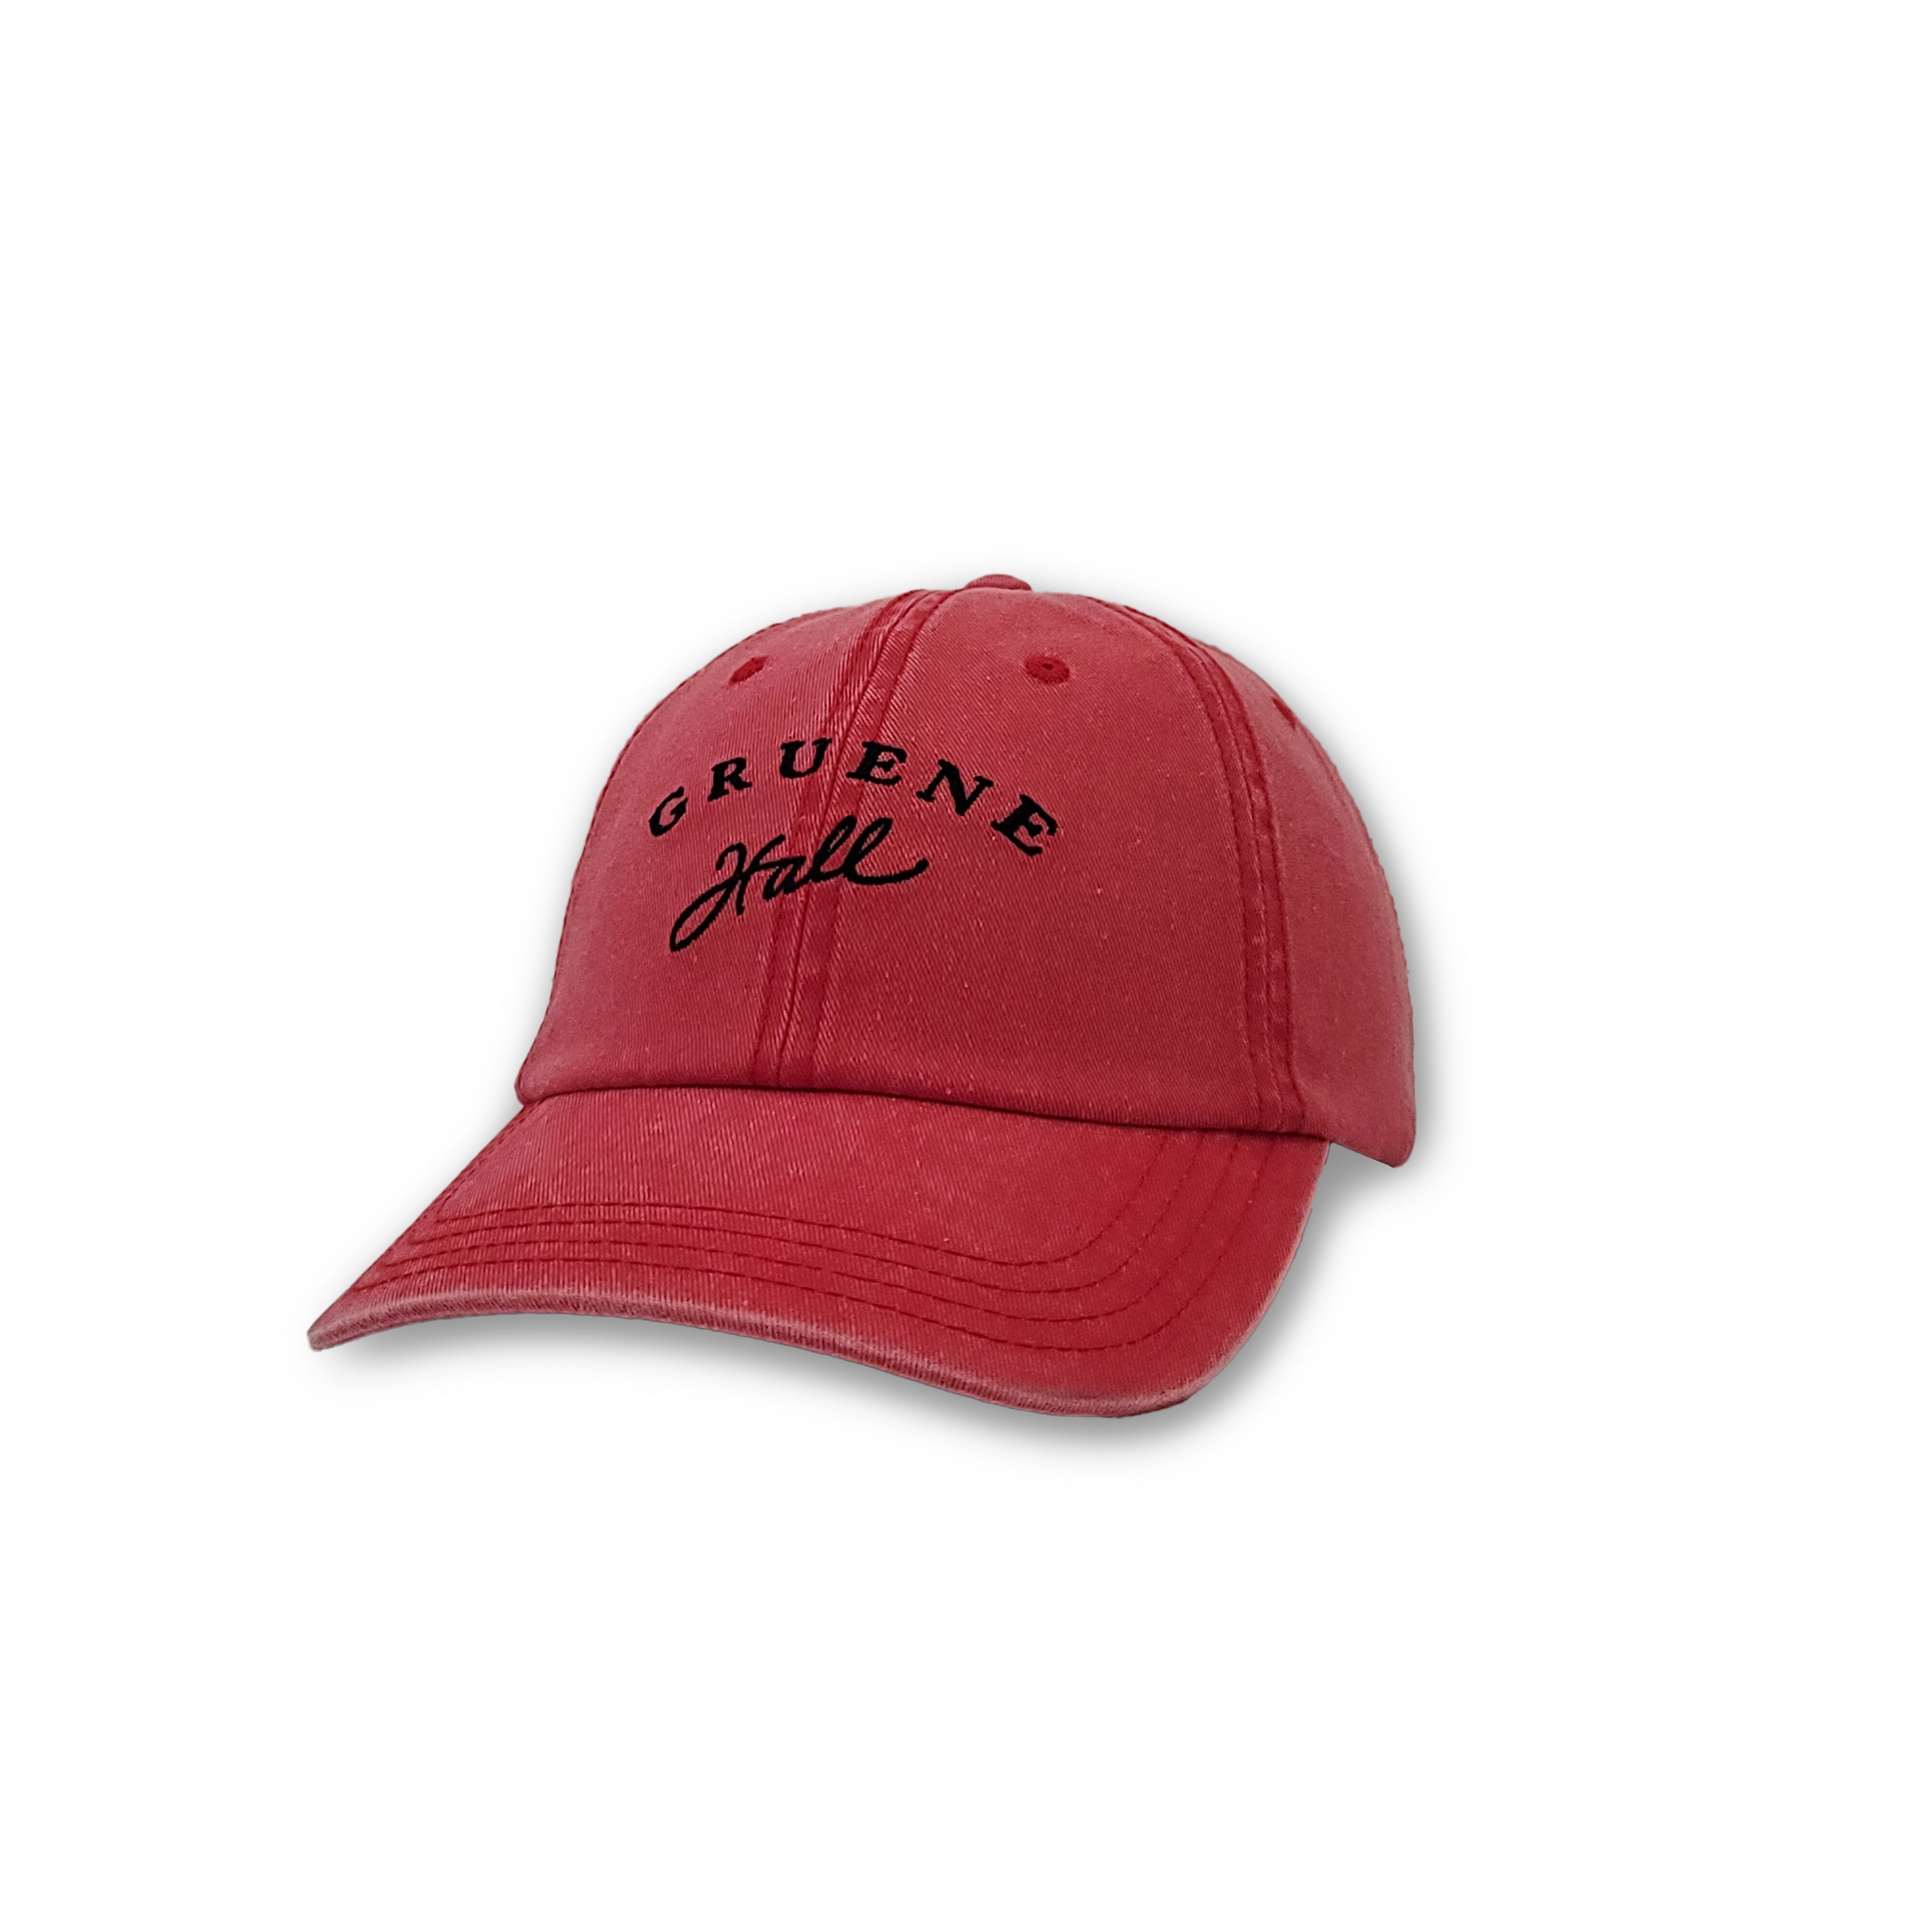 Gruene Hall logo baseball hat